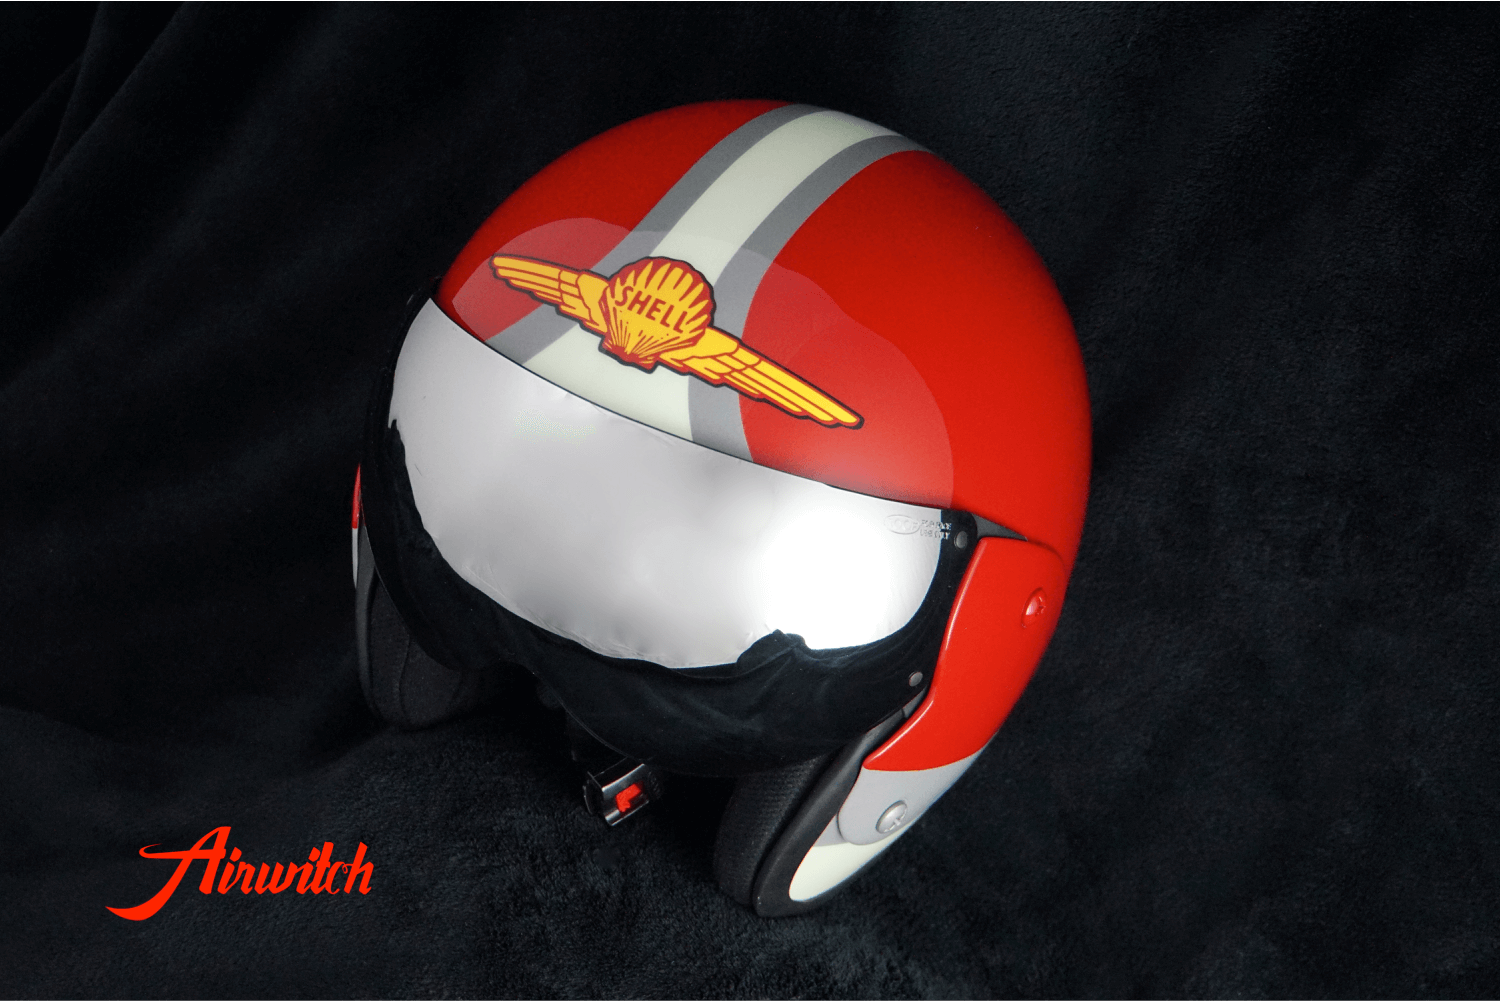 Custom Paint Retrohelm INDIAN Motorcycle mit Streifen und Indianer in rot und pastellgrün mit Shell Logo als Airbrush